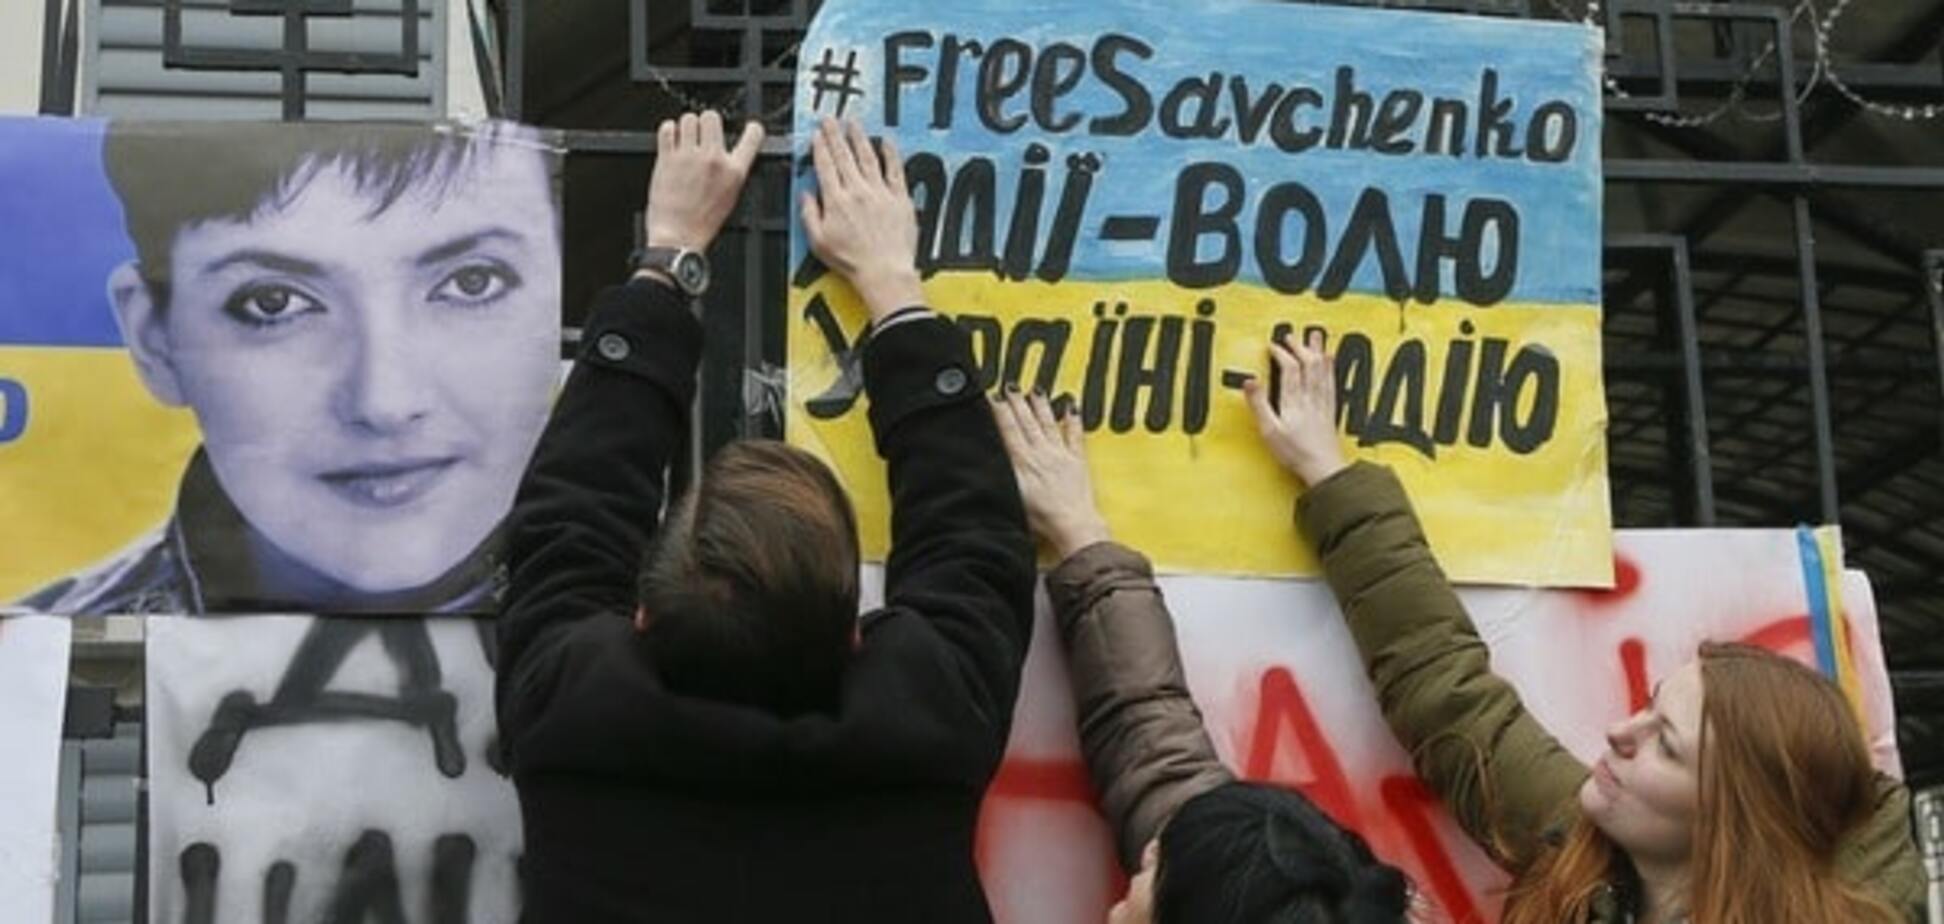 Савченко стала угрозой для власти Украины – The Economist